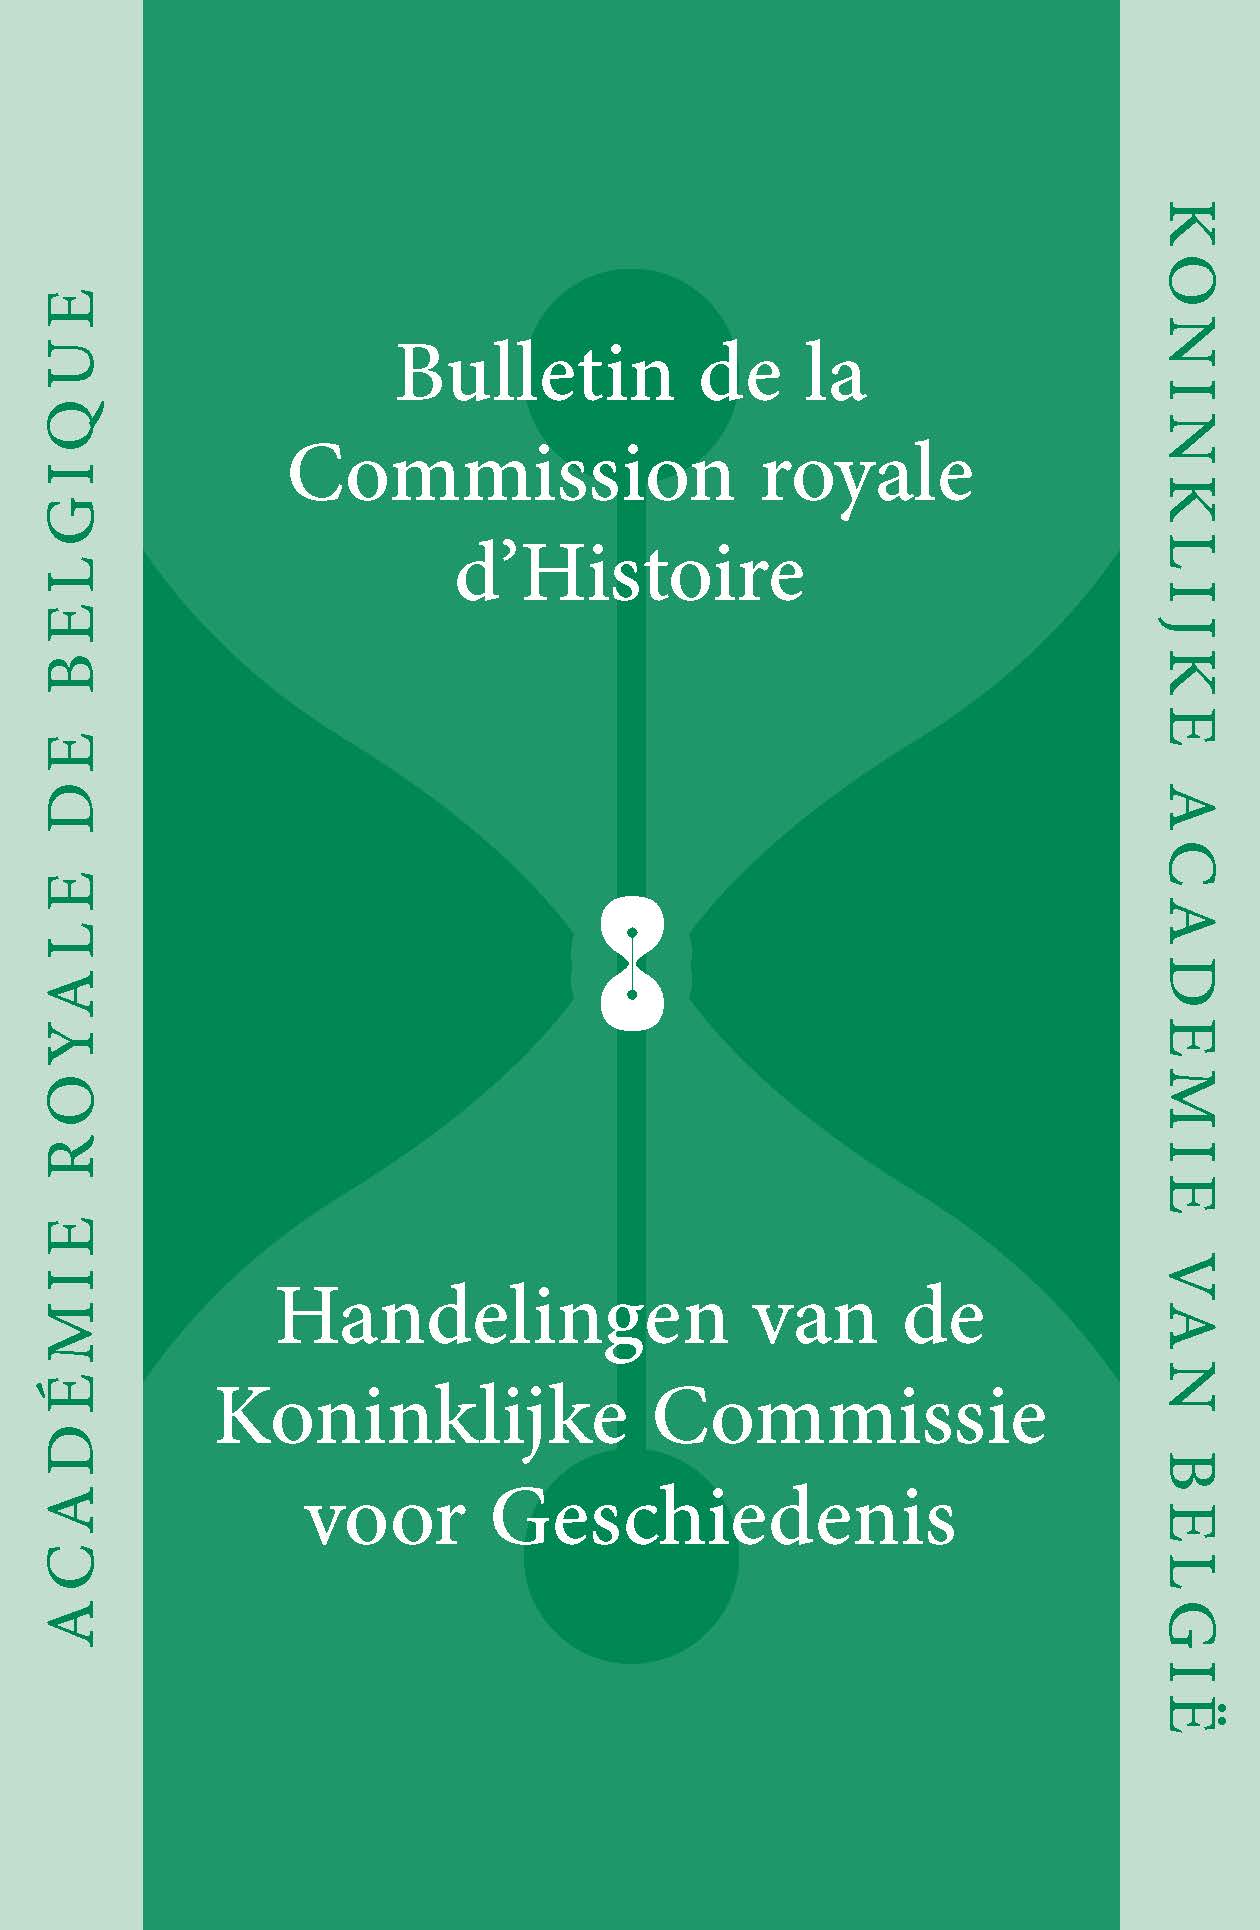 HANDELINGEN VAN DE KONINKLIJKE COMMISSIE VOOR GESCHIEDENIS/BULLETIN, vol. 180, 2014 (kcg)